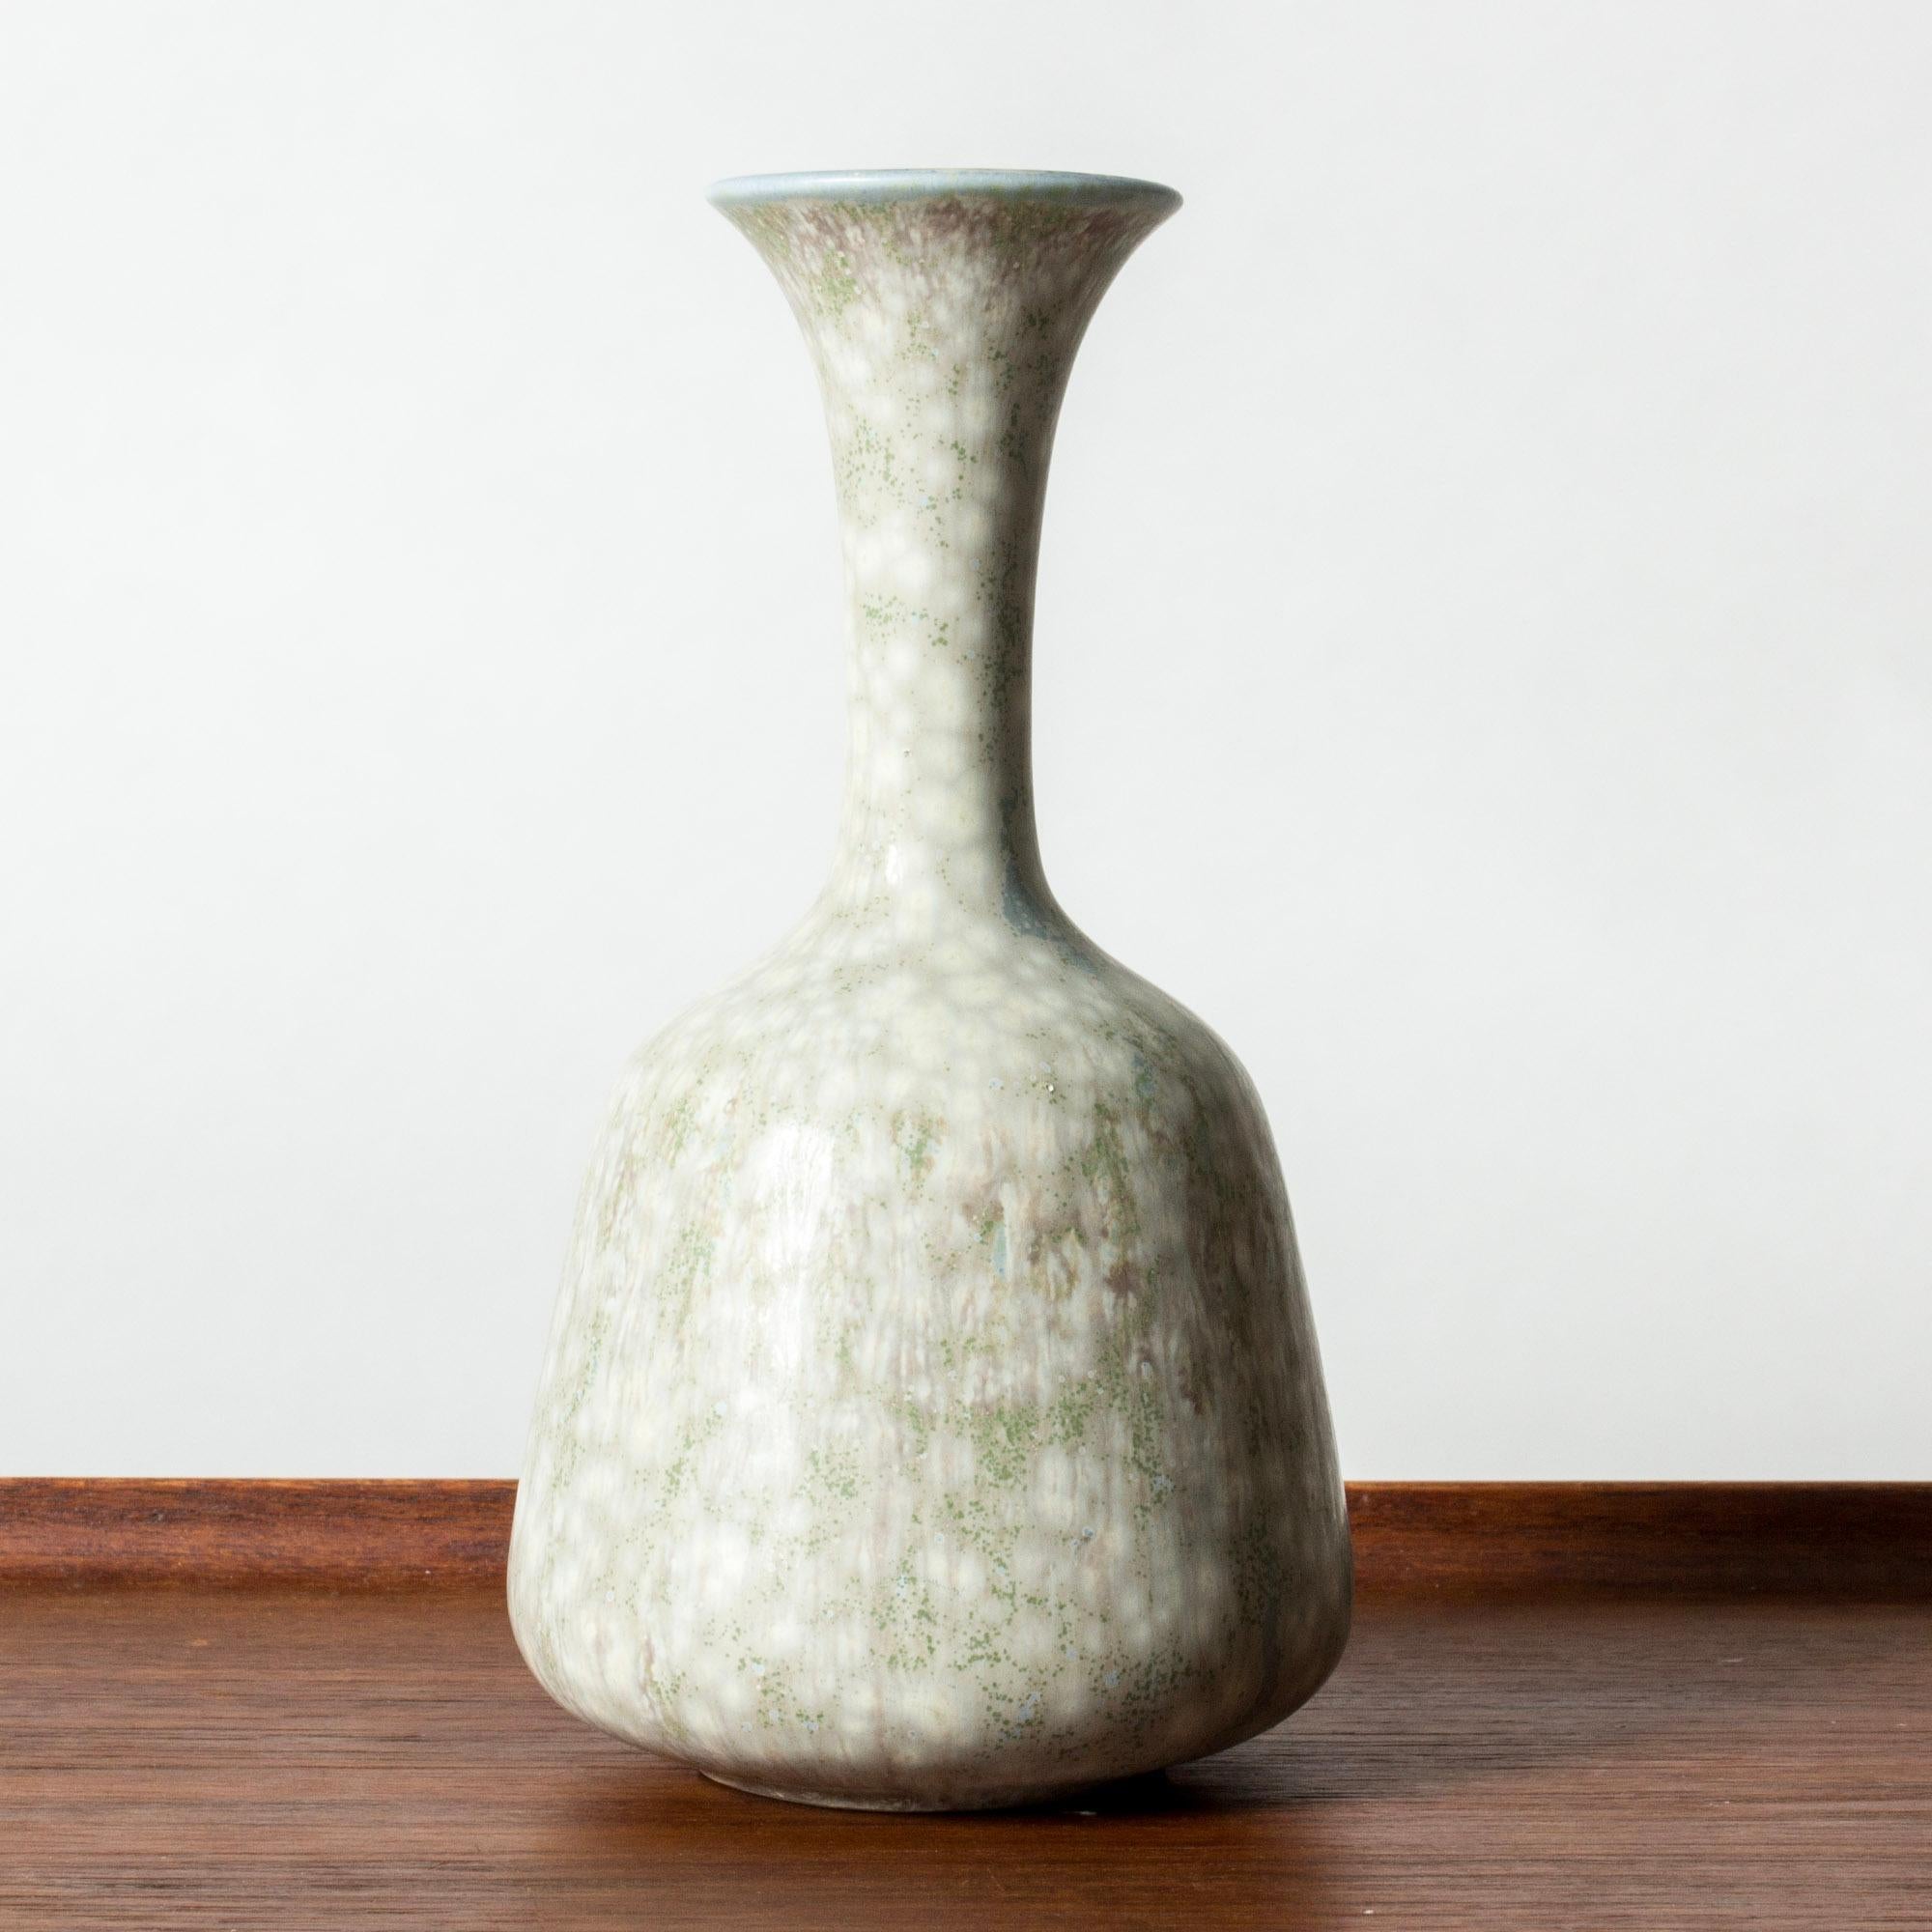 Magnifique vase en grès de Gunnar Nylund, à la forme ronde et au col élancé. Glaçure bleu verdâtre pâle avec un motif 